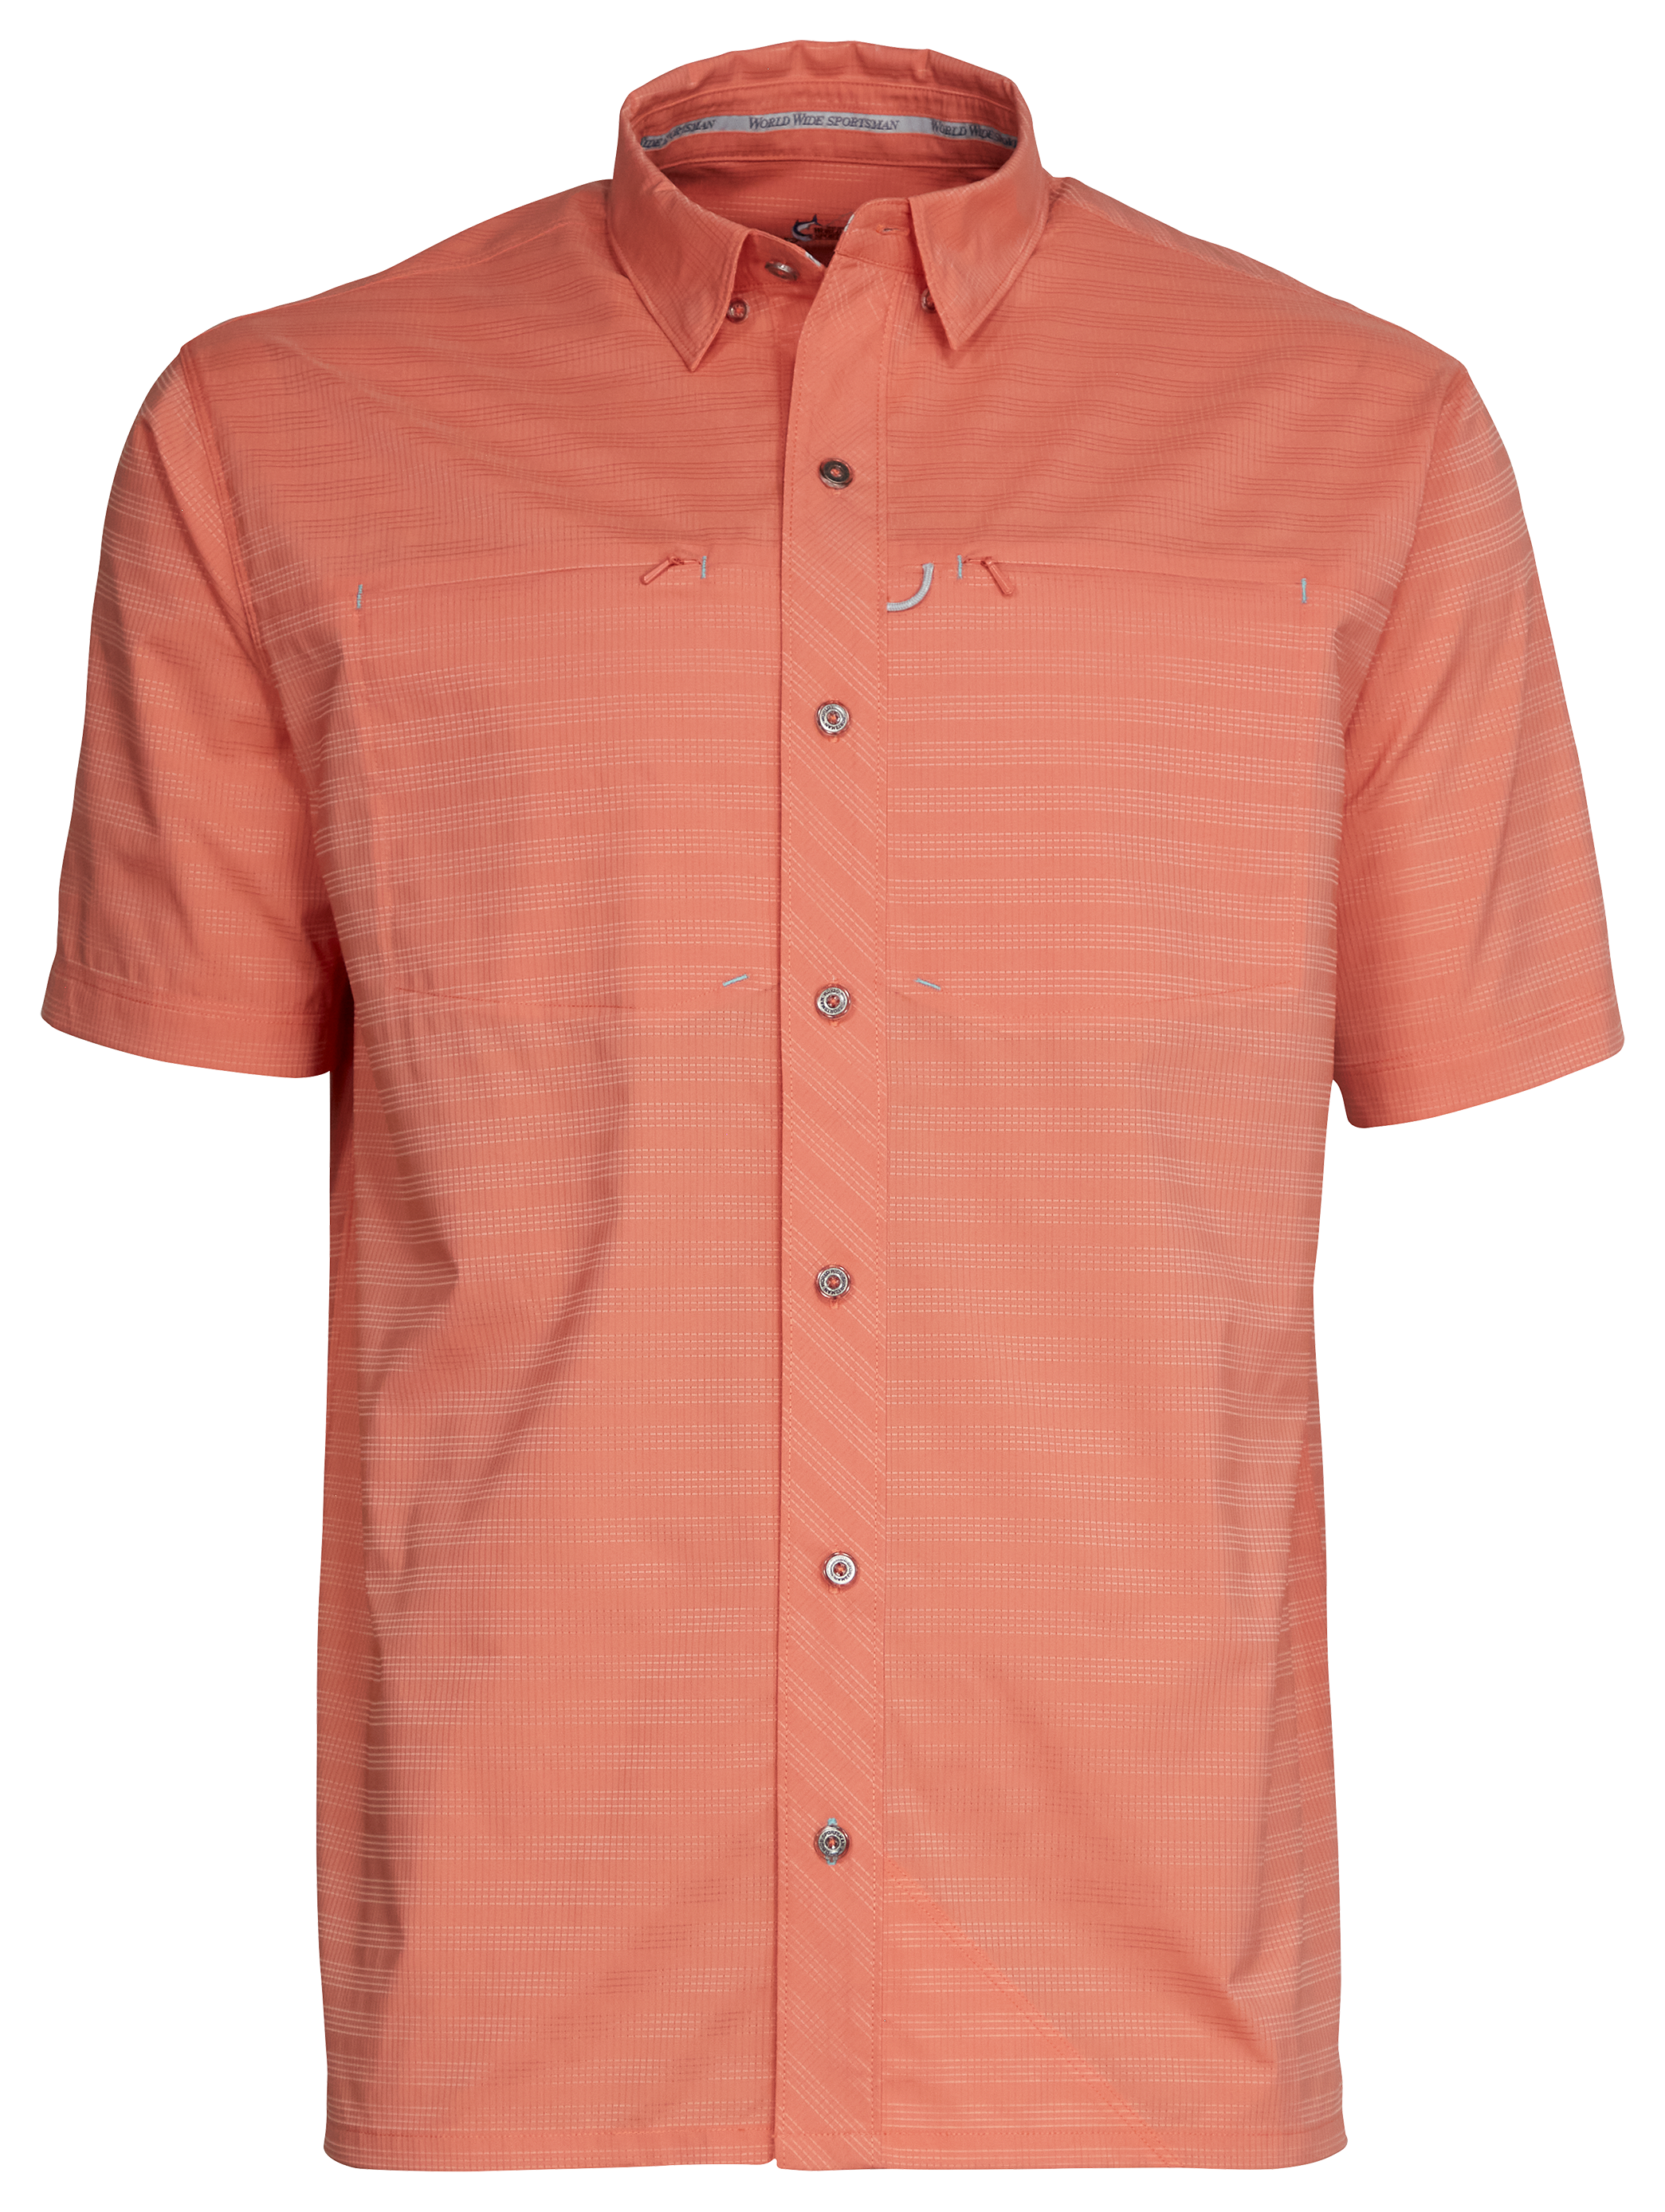 World Wide Sportsman Seacrest 2-Pocket Short-Sleeve Button-Down Shirt for Men - Crabapple - L